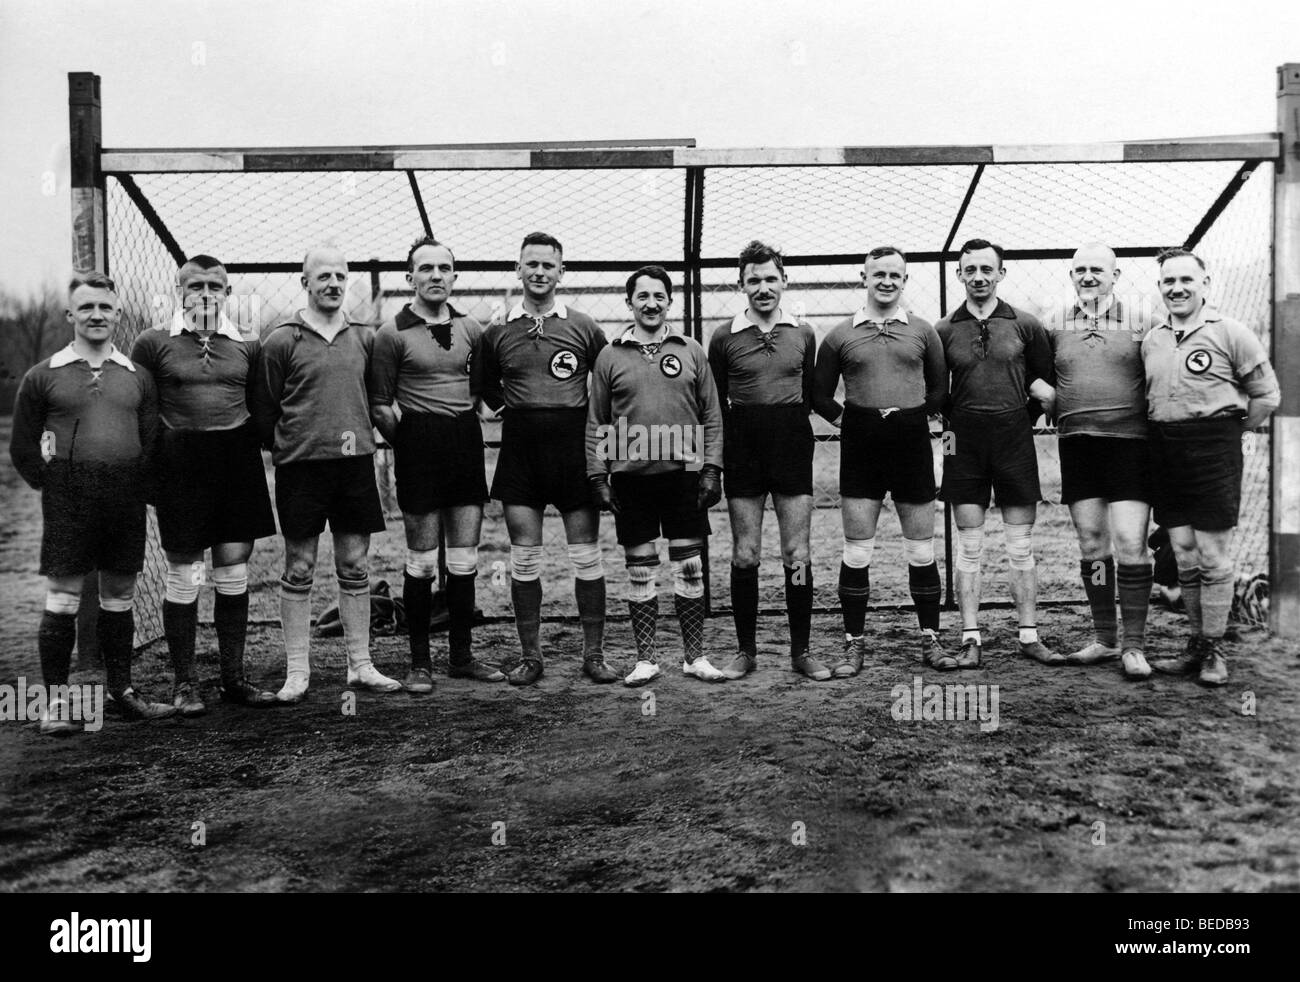 Historique de l'équipe de soccer, photographie, vers 1922 Banque D'Images